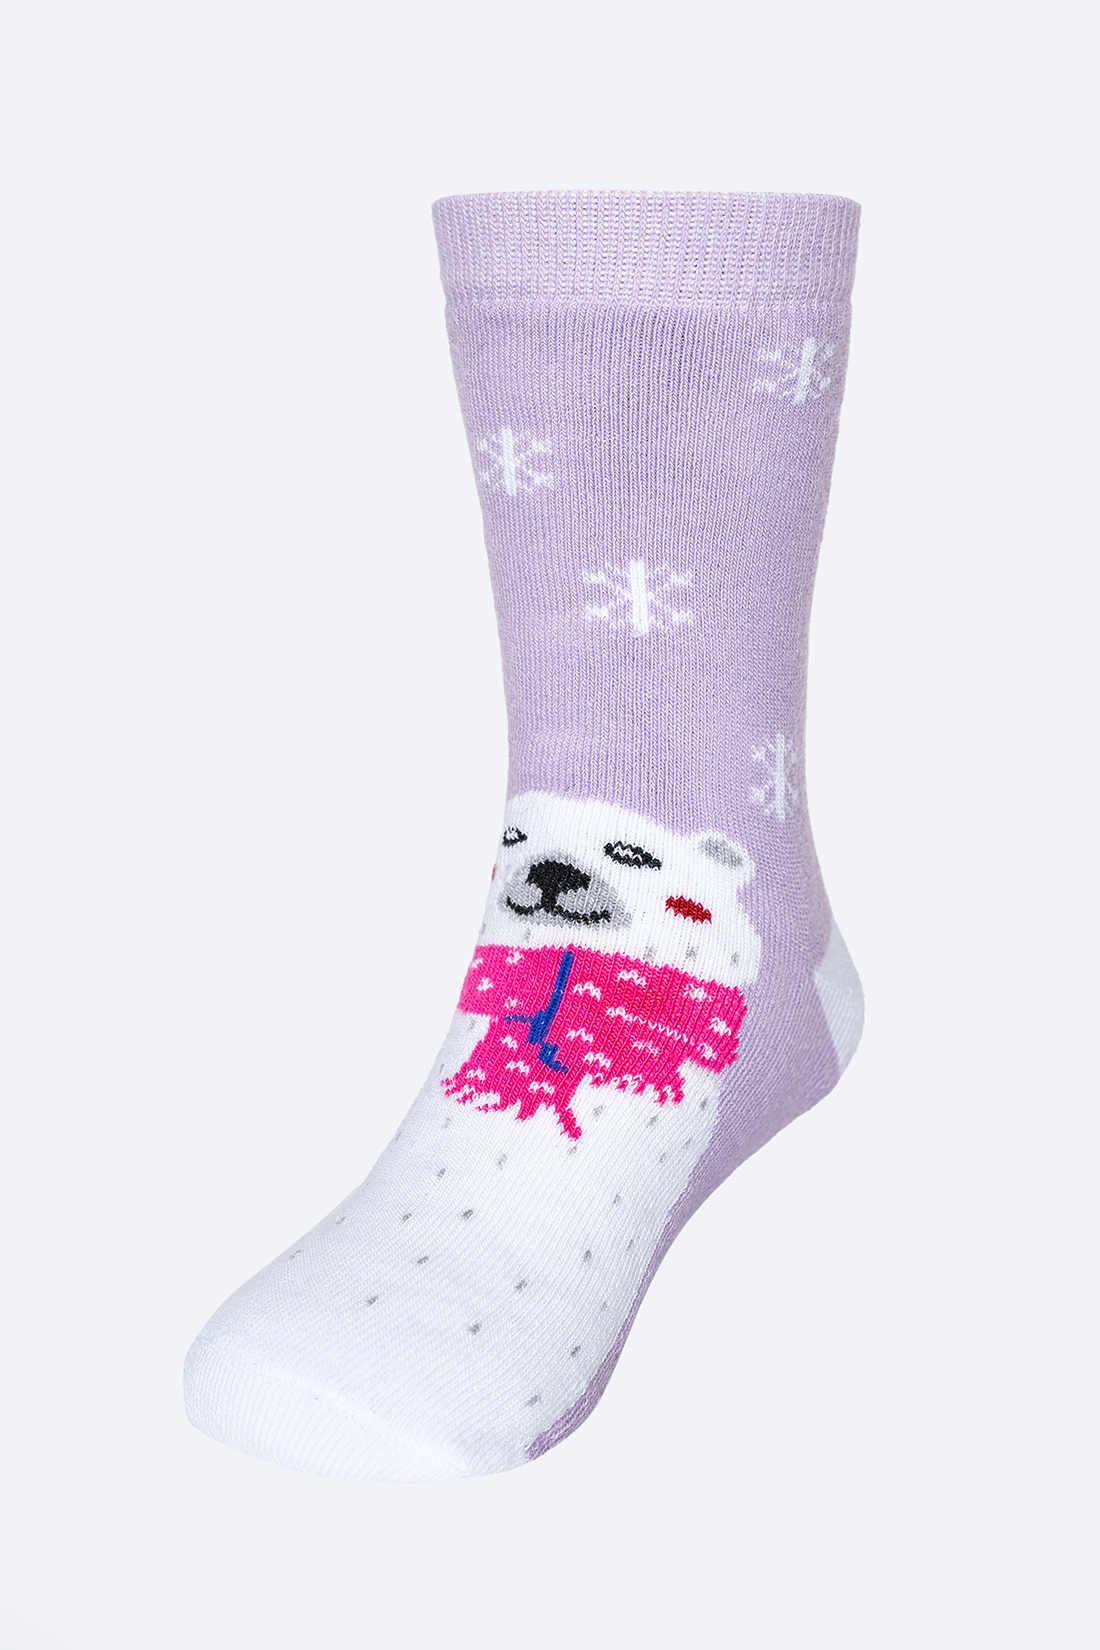 Носки для девочки (арт. baon BK399501), размер 29/31, цвет фиолетовый